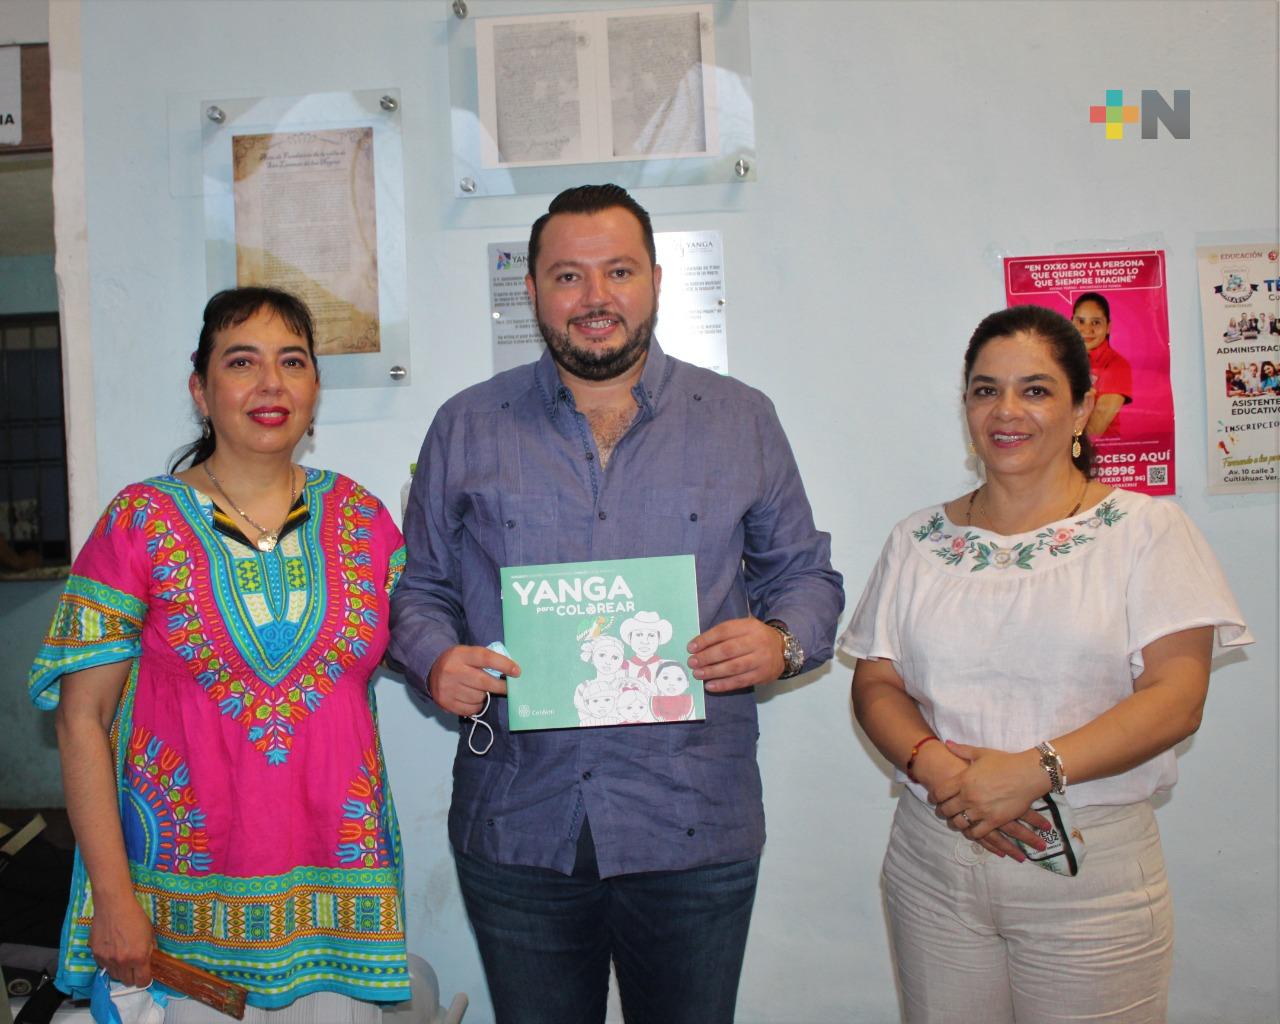 Presentaron «Yanga» libro infantil para colorear en marco de Festival Afrocaribeño